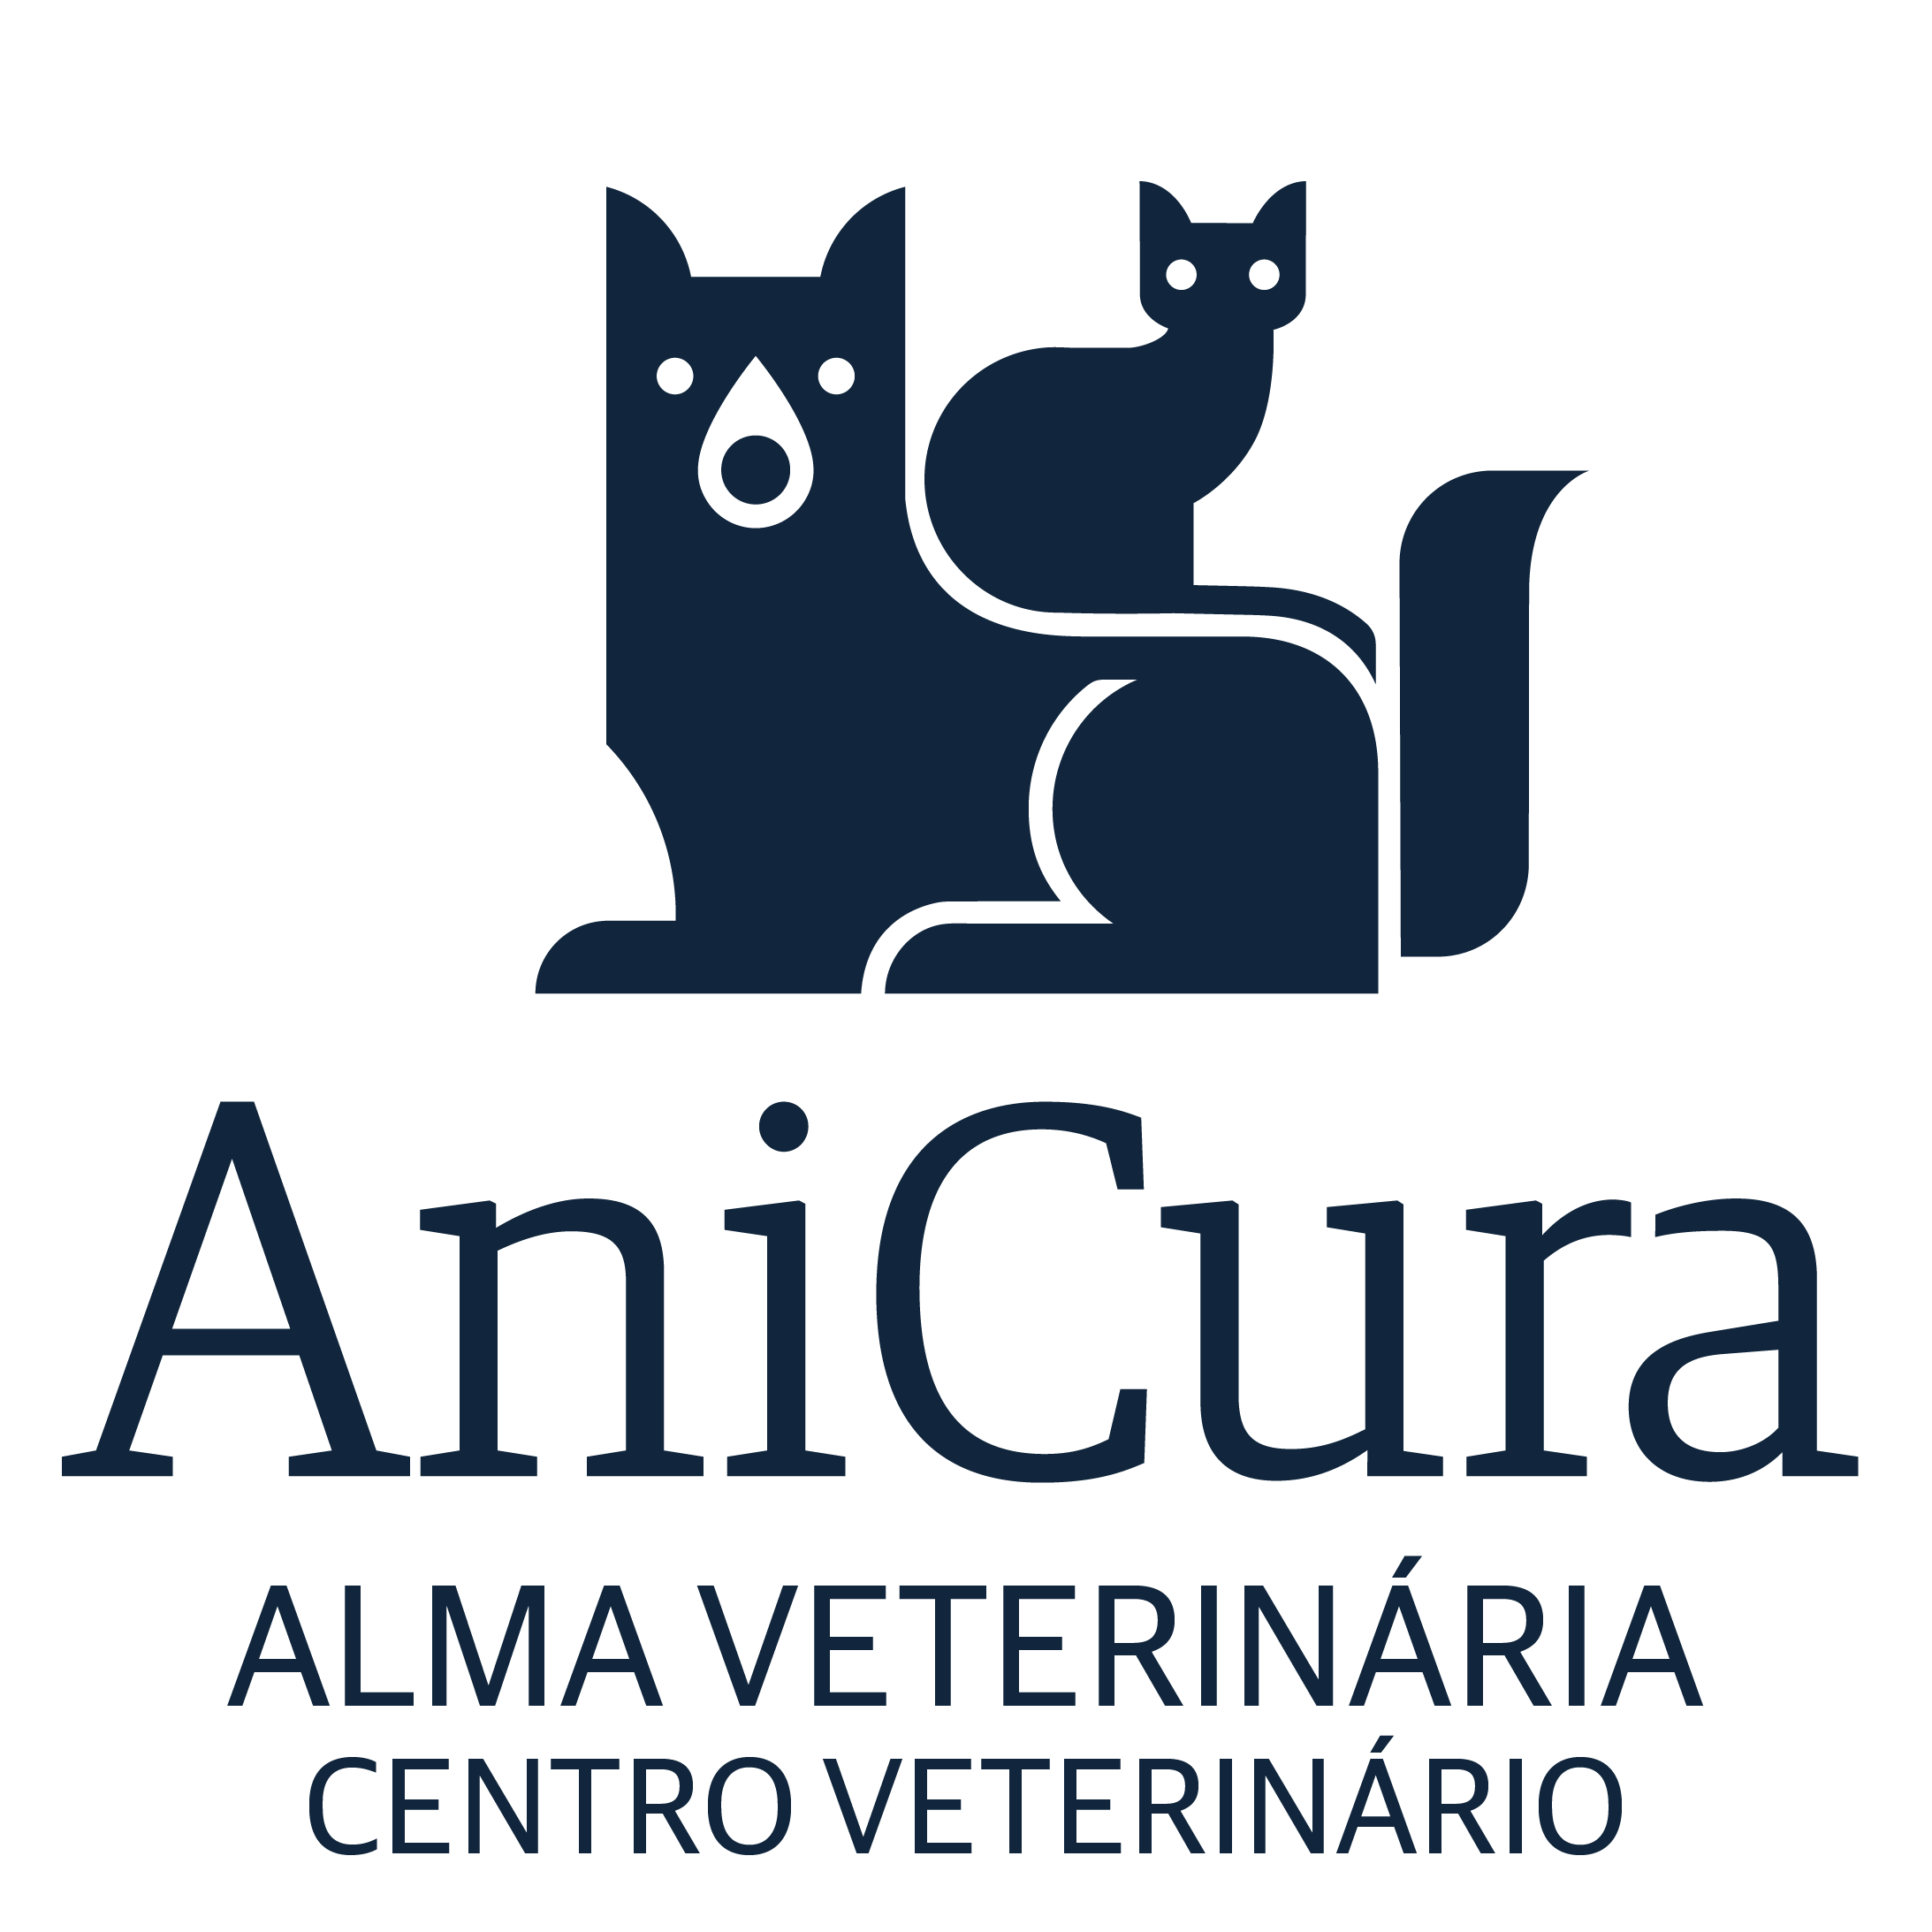 AniCura Alma Veterinária Centro Veterinário - Ouressa logo